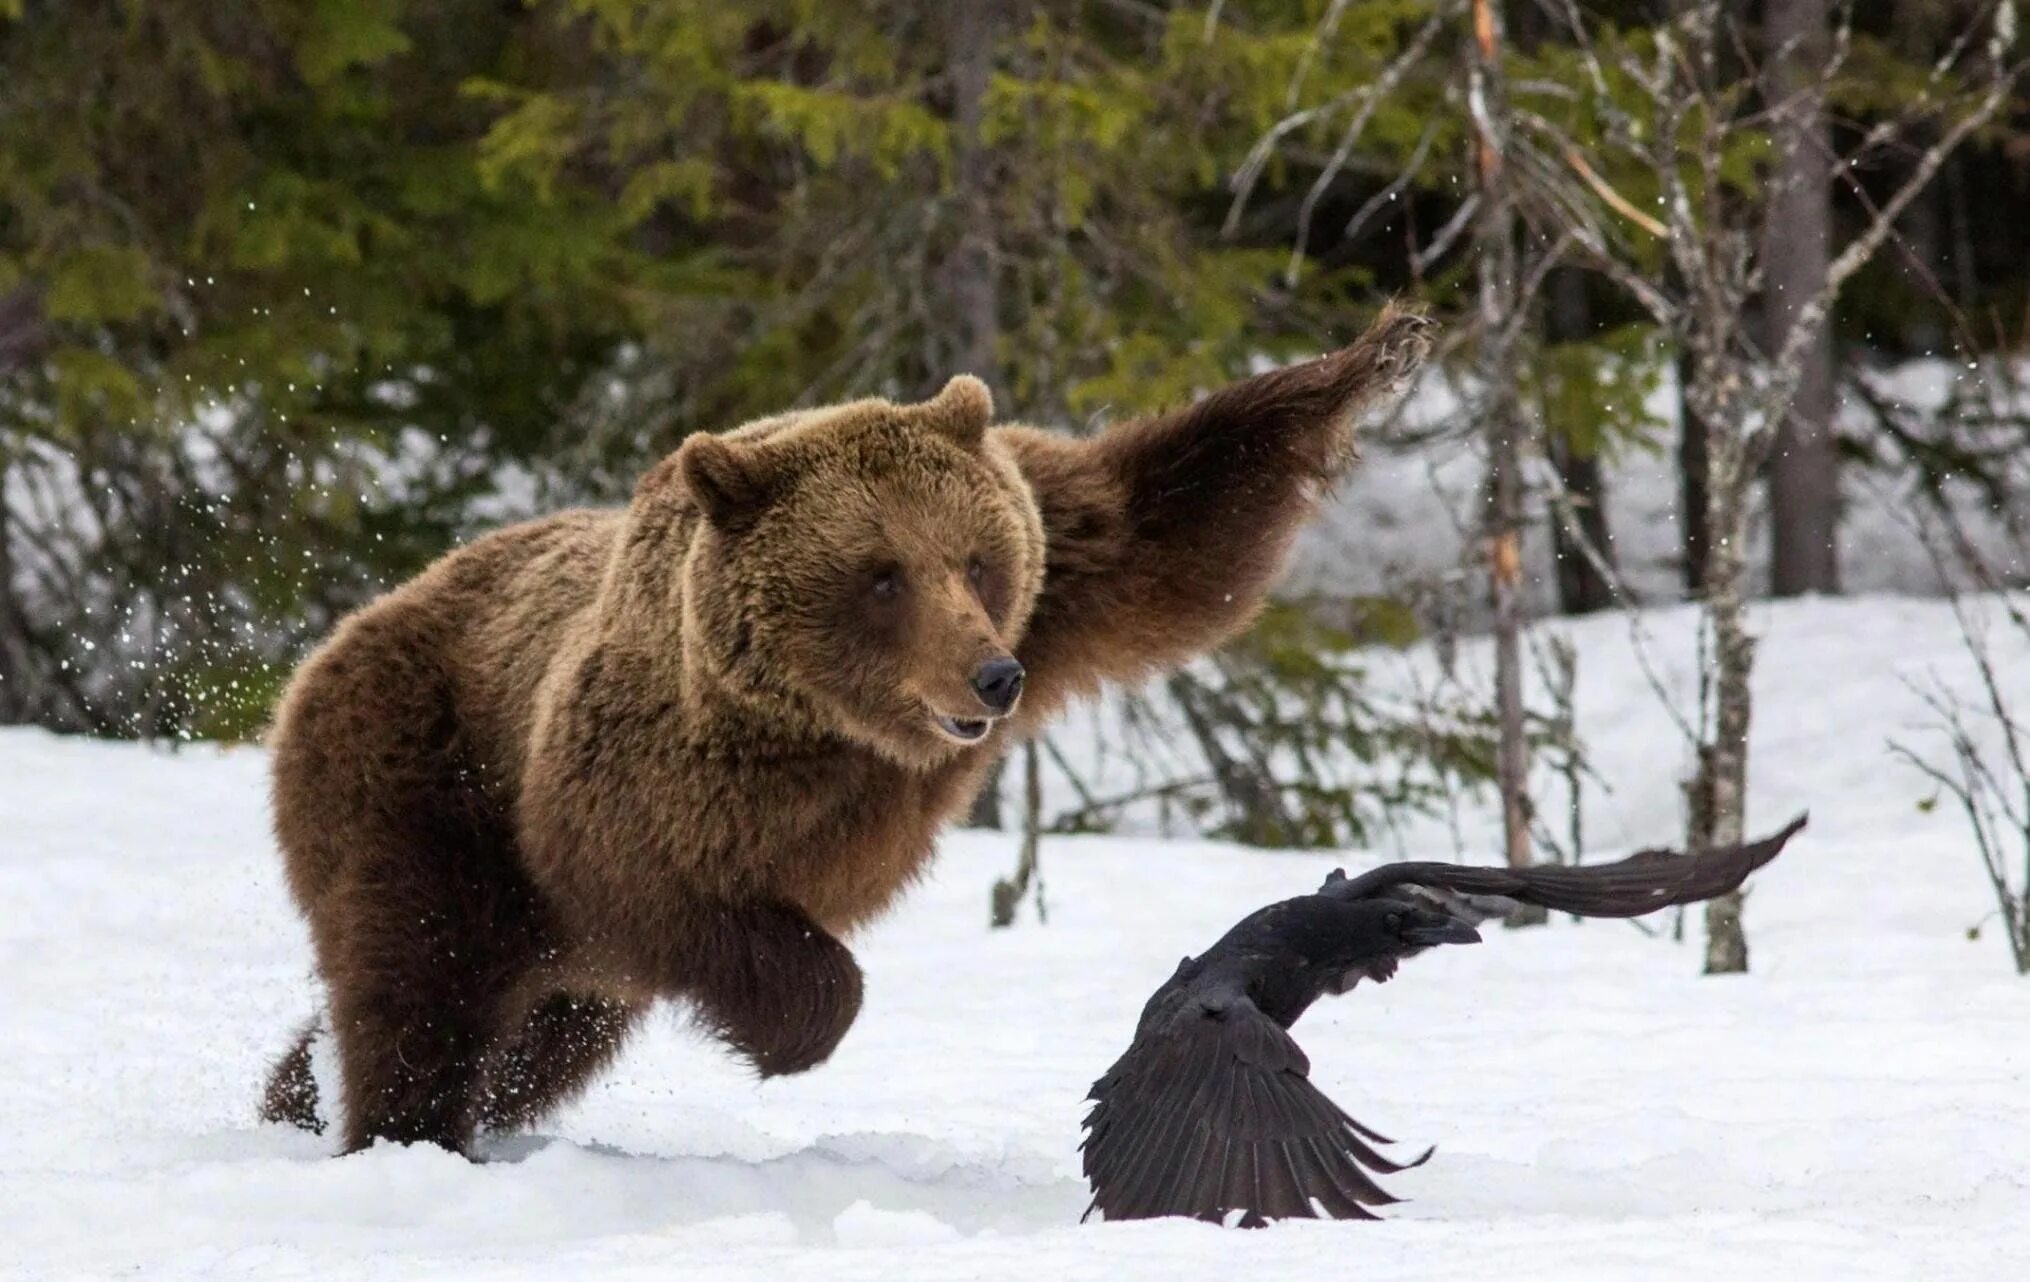 Сибирский бурый медведь.  Ursus arctos collaris — Сибирский бурый медведь. Бурый медведь дальнего Востока. Животные средней сибири